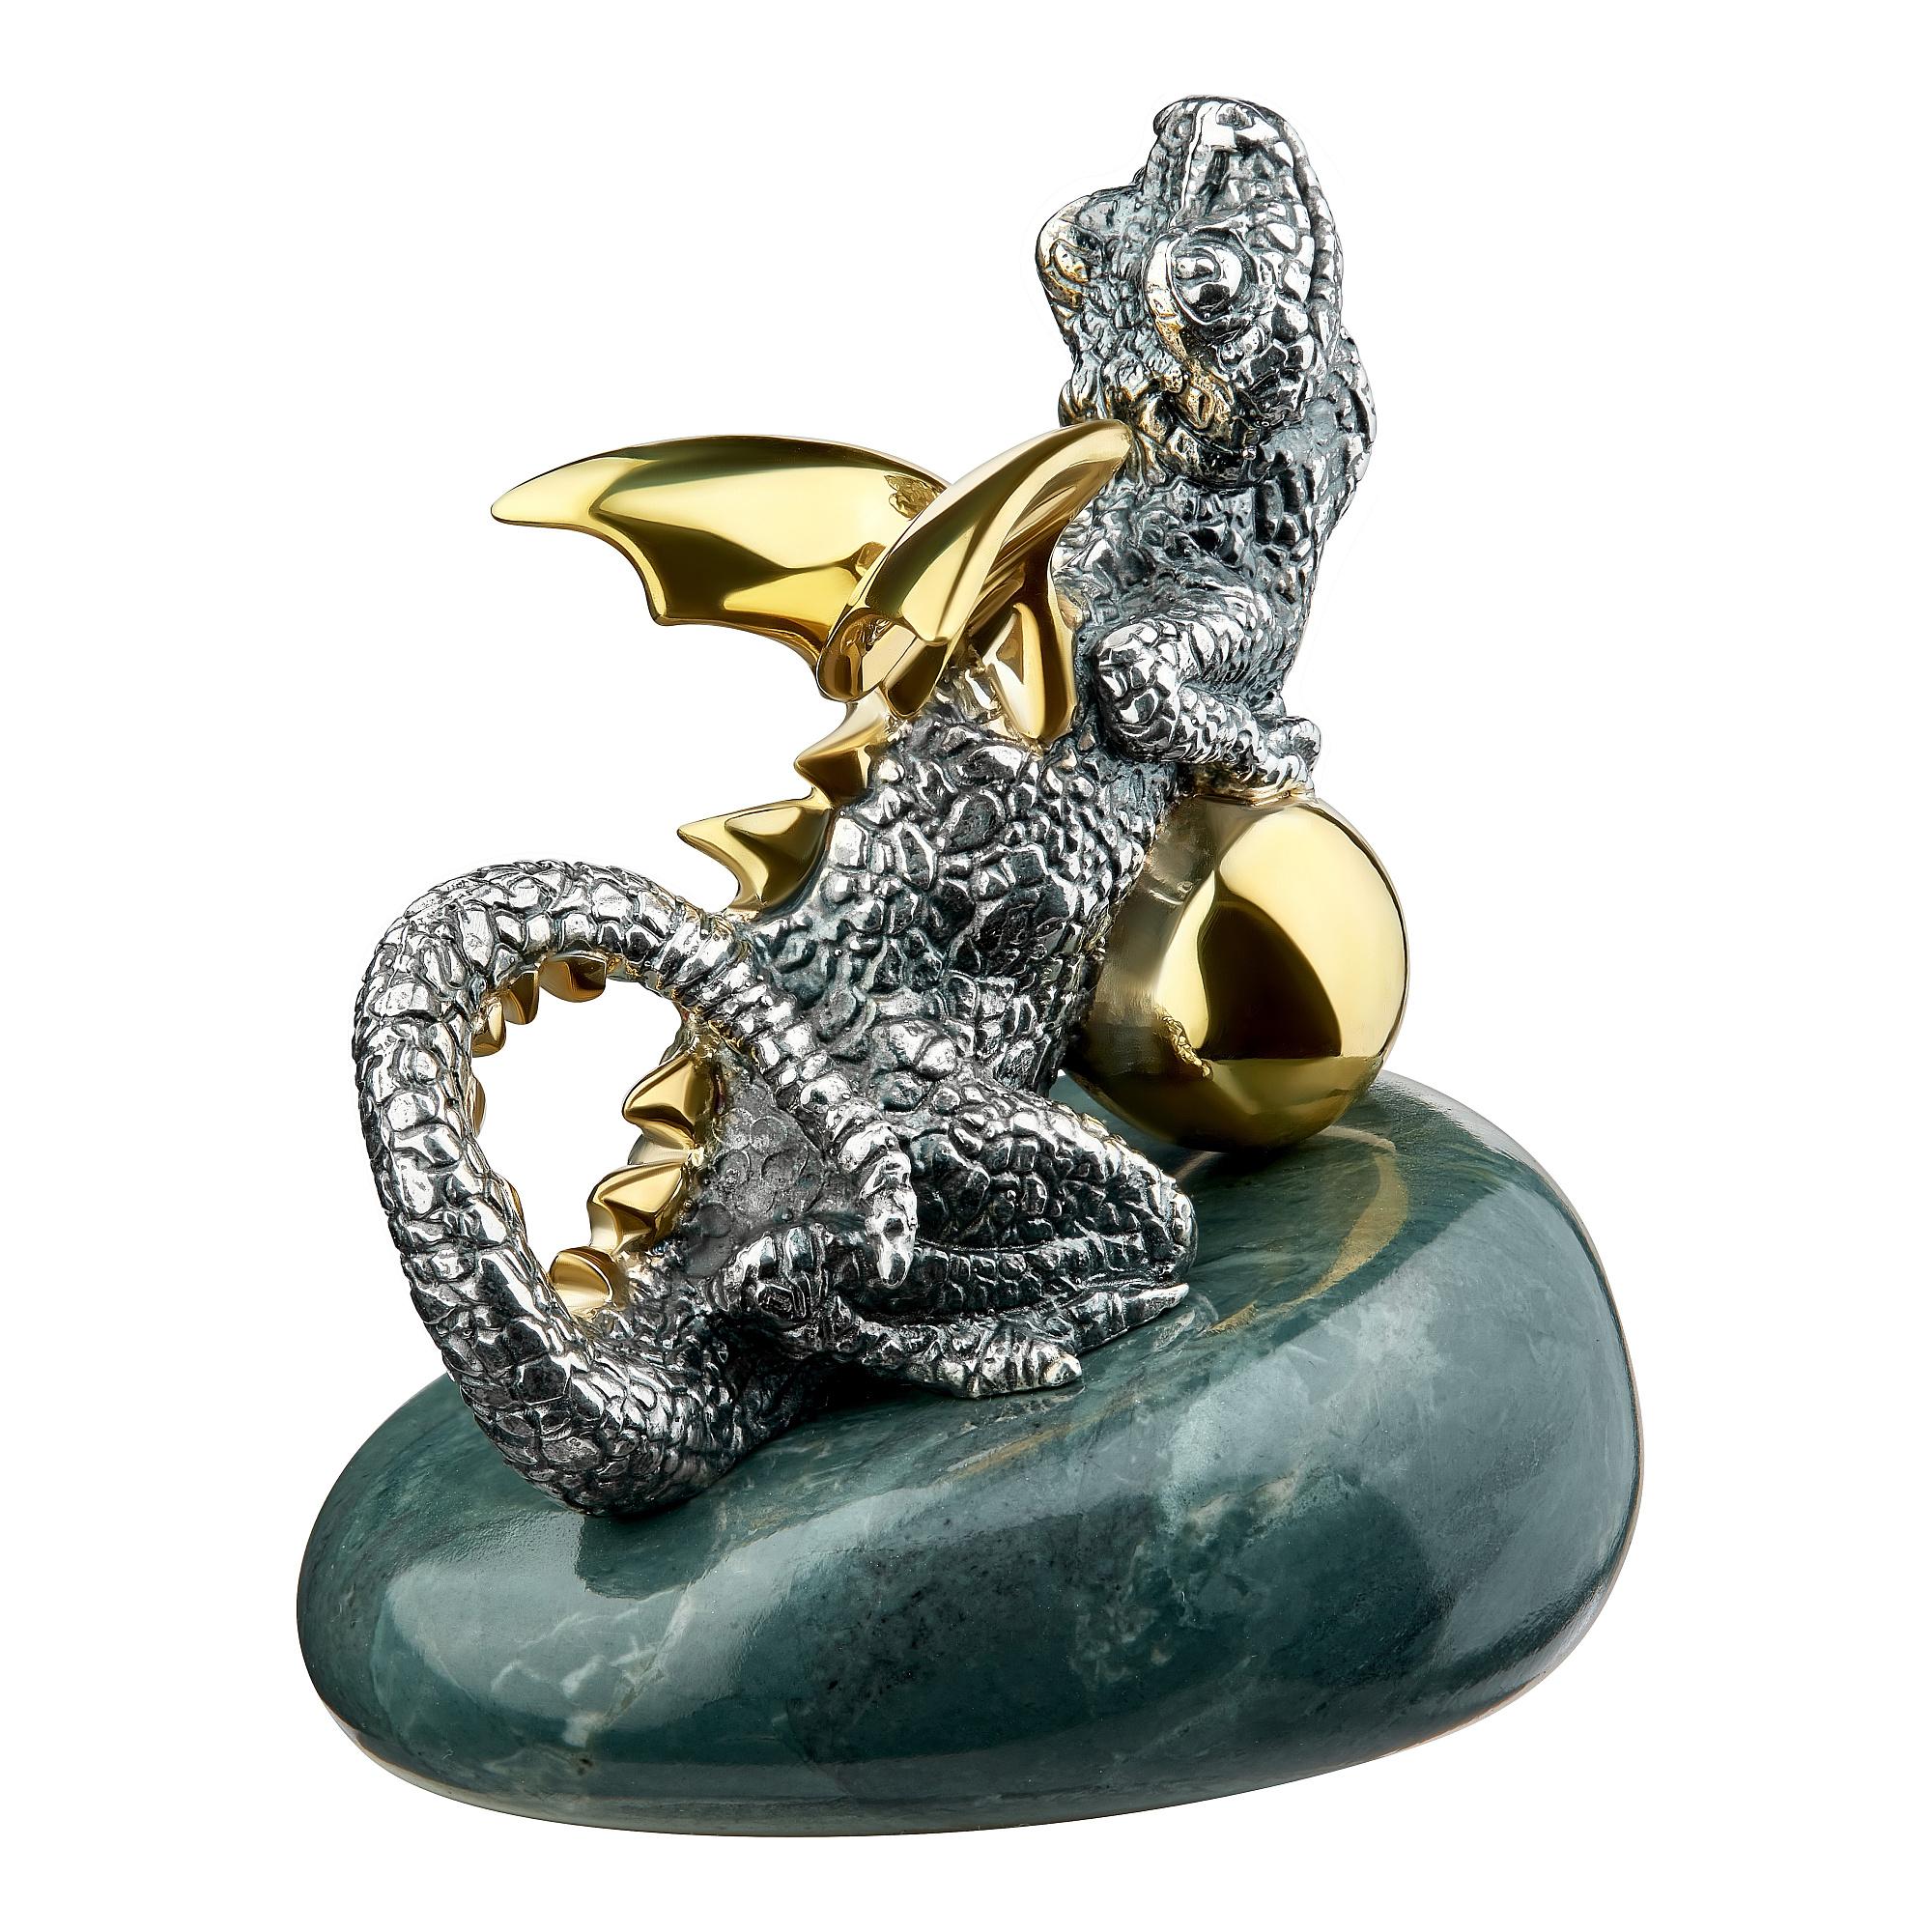 La miniature exquise de la sculpture de dragon de MOISEIKIN - une fusion de l'art, du symbolisme et de la fonctionnalité. Fabriqué et gravé en argent et orné de sculptures dorées, ce majestueux dragon ailé capture l'essence de la richesse et du